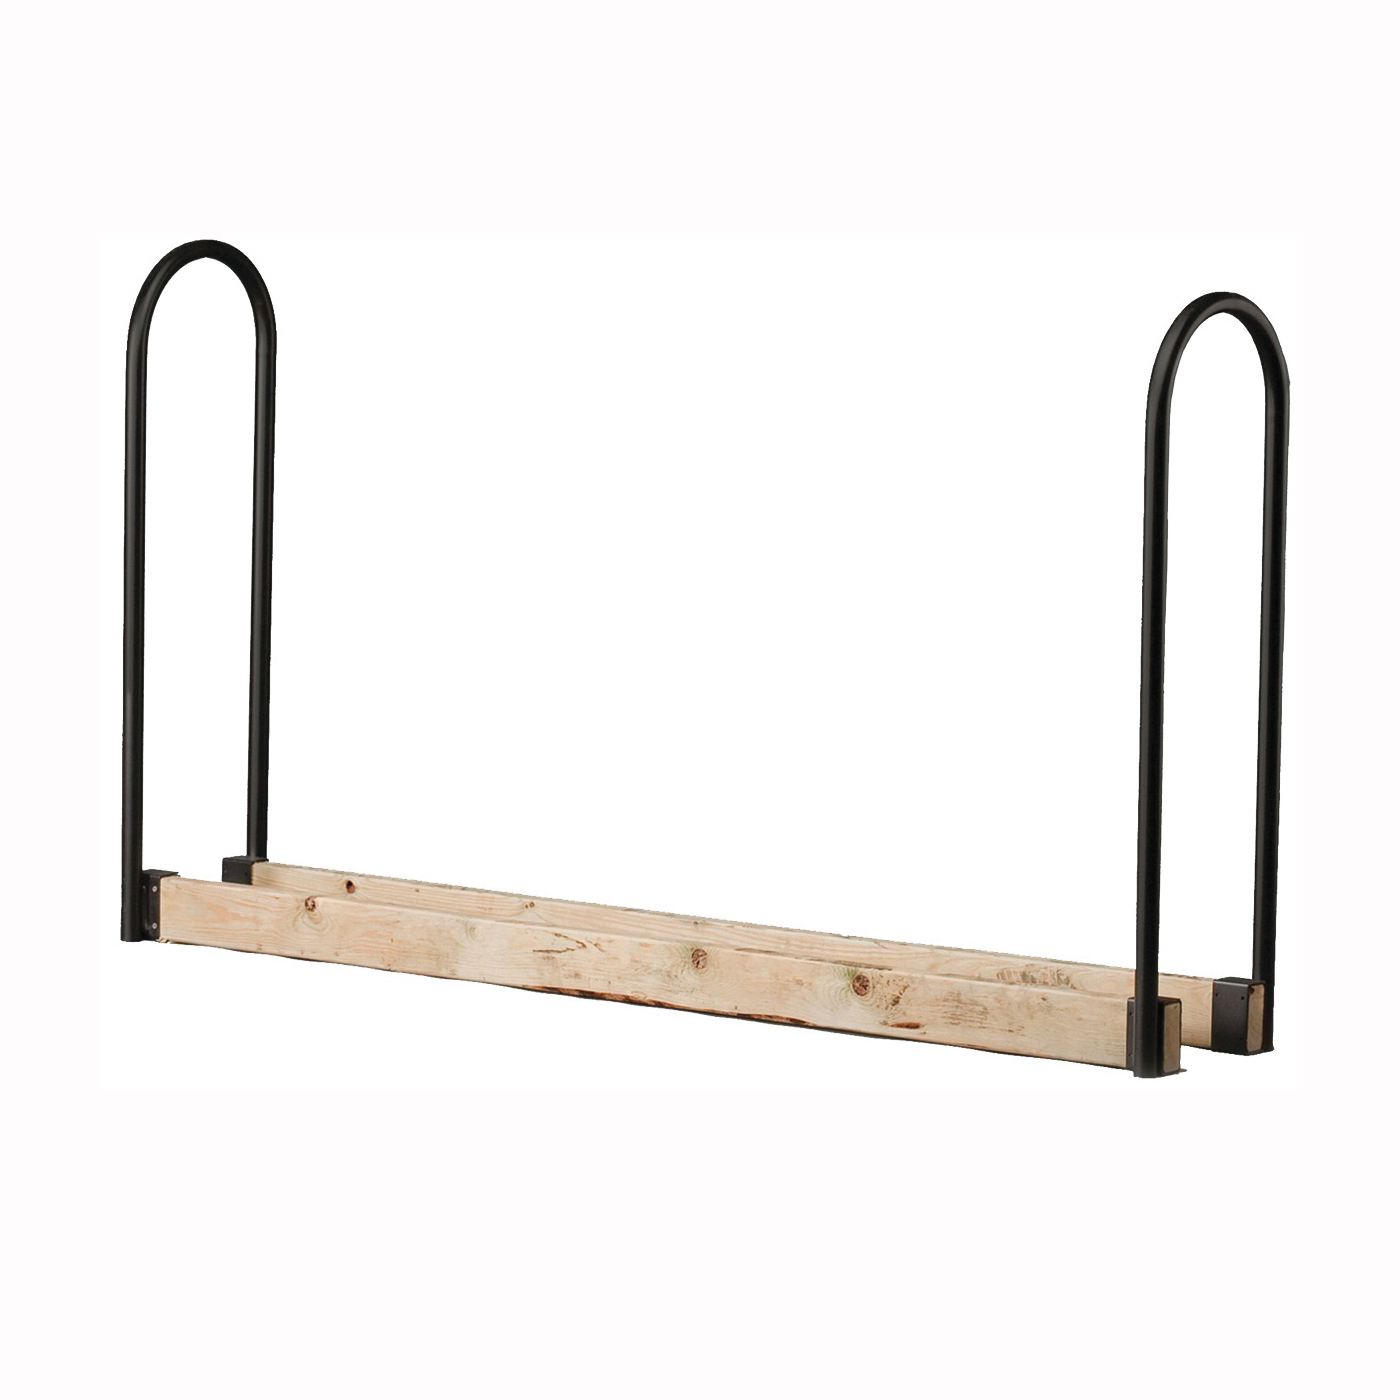 SLRA Adjustable Log Rack Kit, 13 in W, 45 in H, Steel Base, Powder-Coated, Black